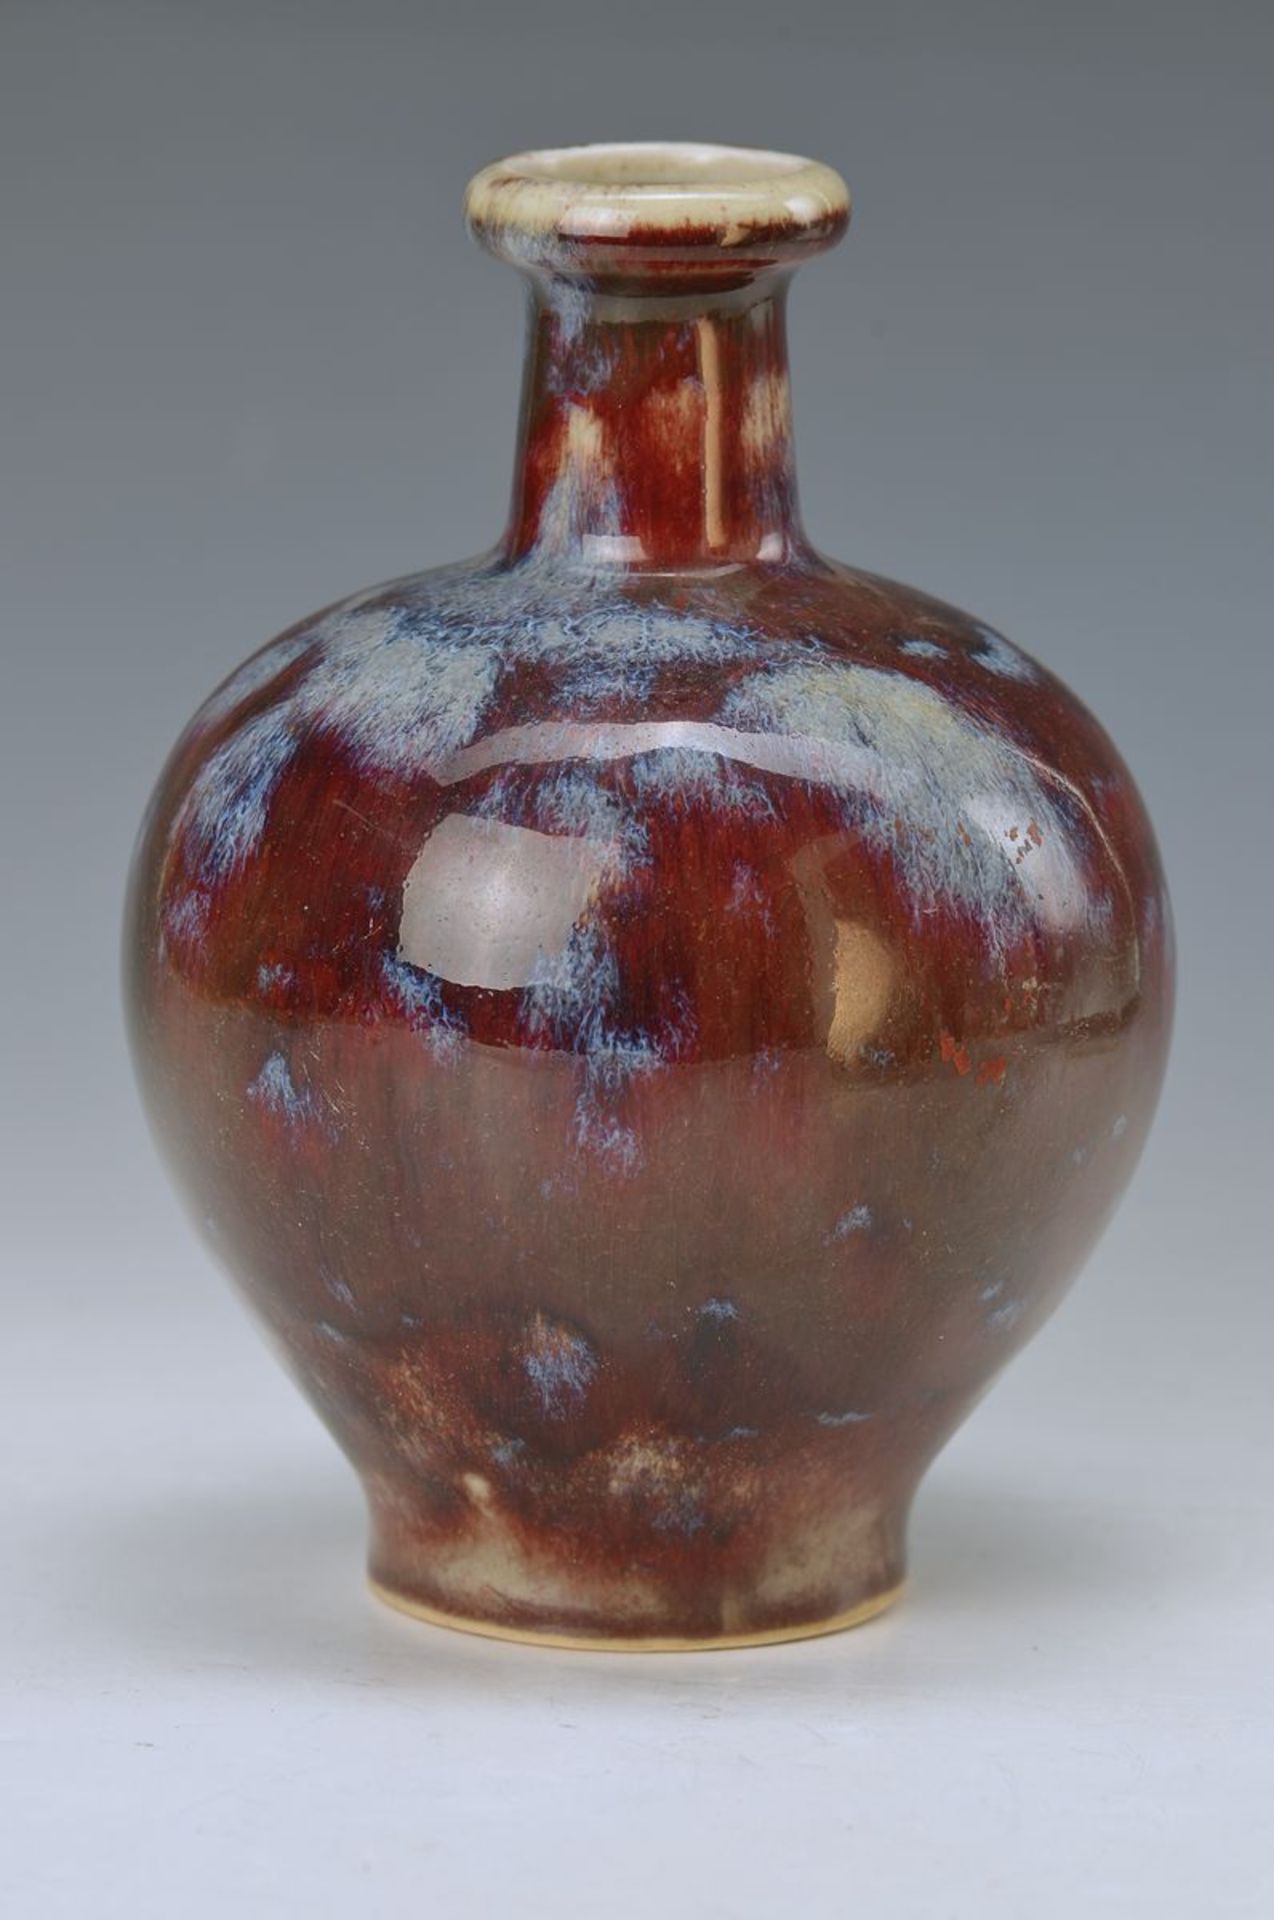 Bauchige Vase, WMF, um 1935-40, sog. Ochsenblutglasur mit bläulich, streifigen Unterbrechungen,